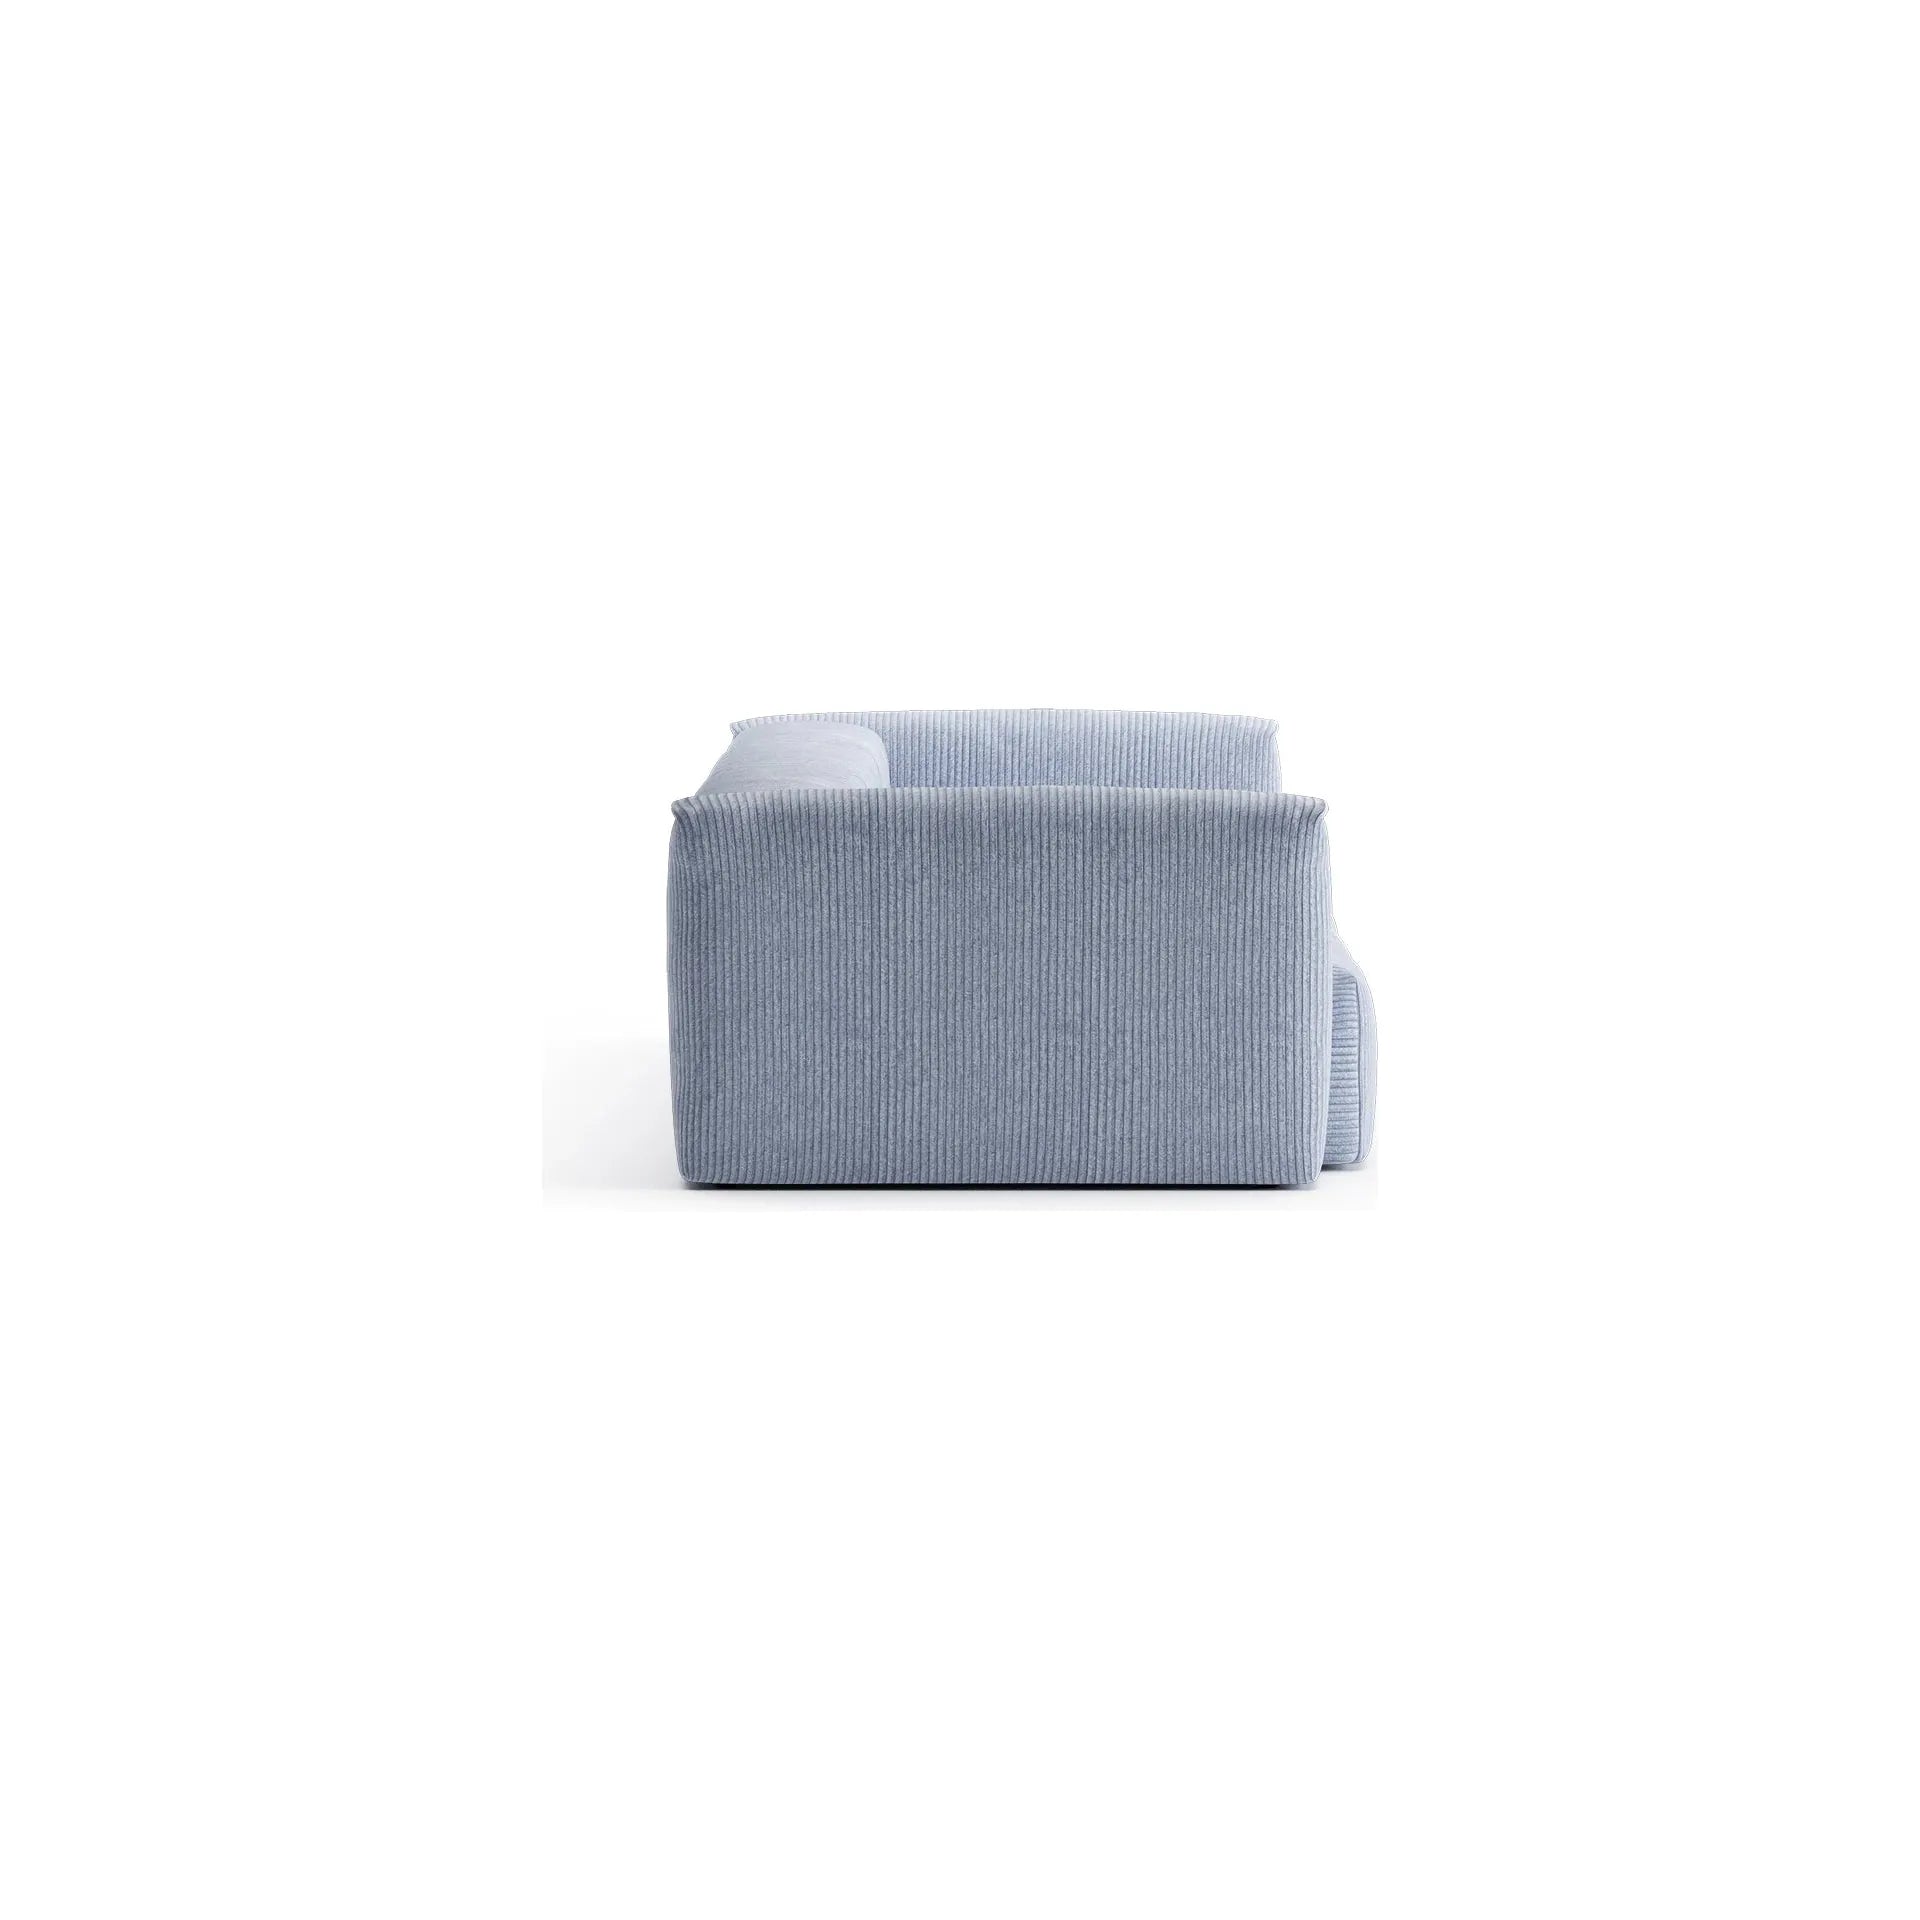 CLOUD XL, 4 vietų modulinė sofa, melsva spalva, velvetas